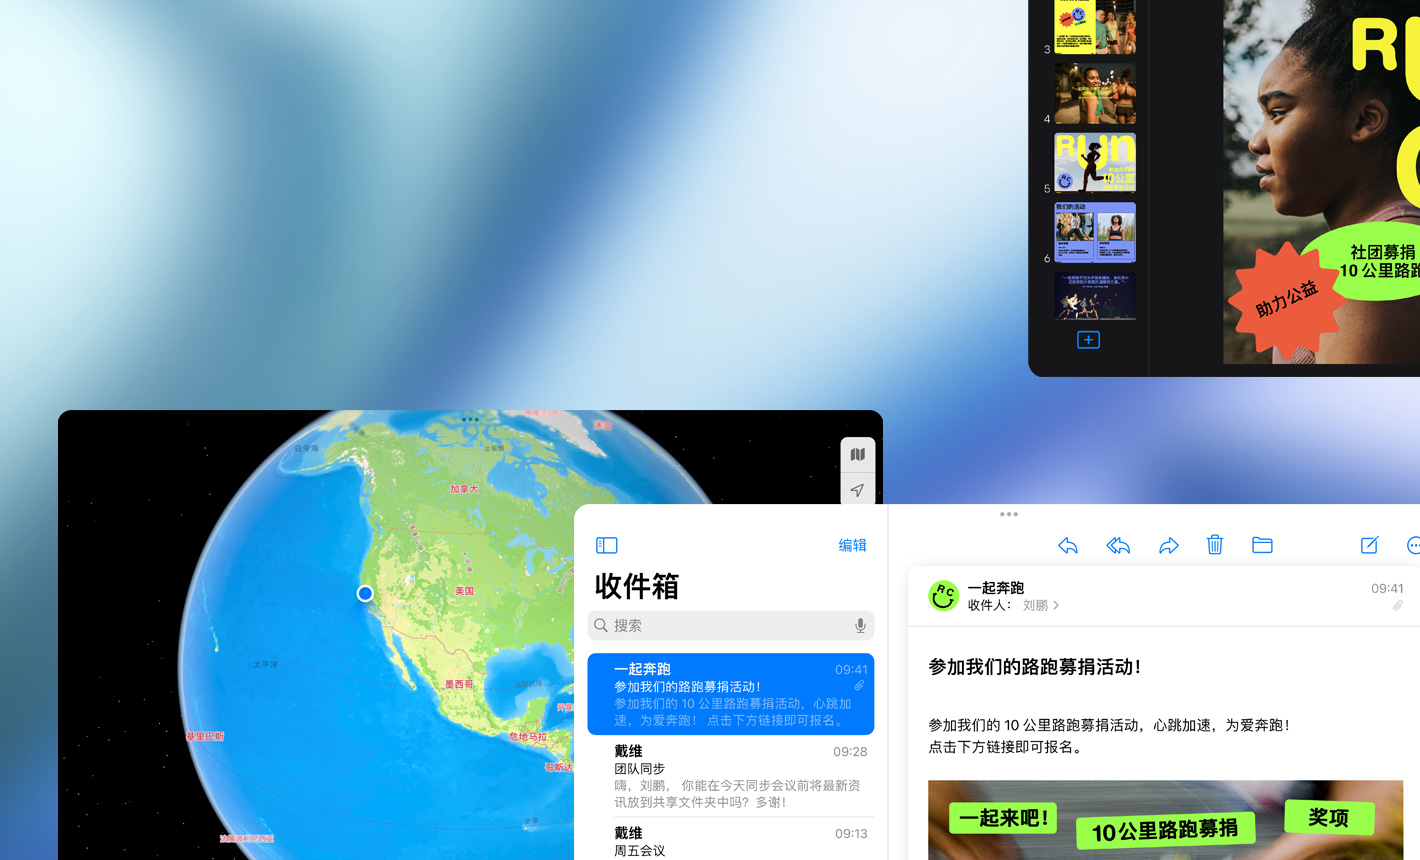 横屏显示多个窗口，展示多个使用中的 app。